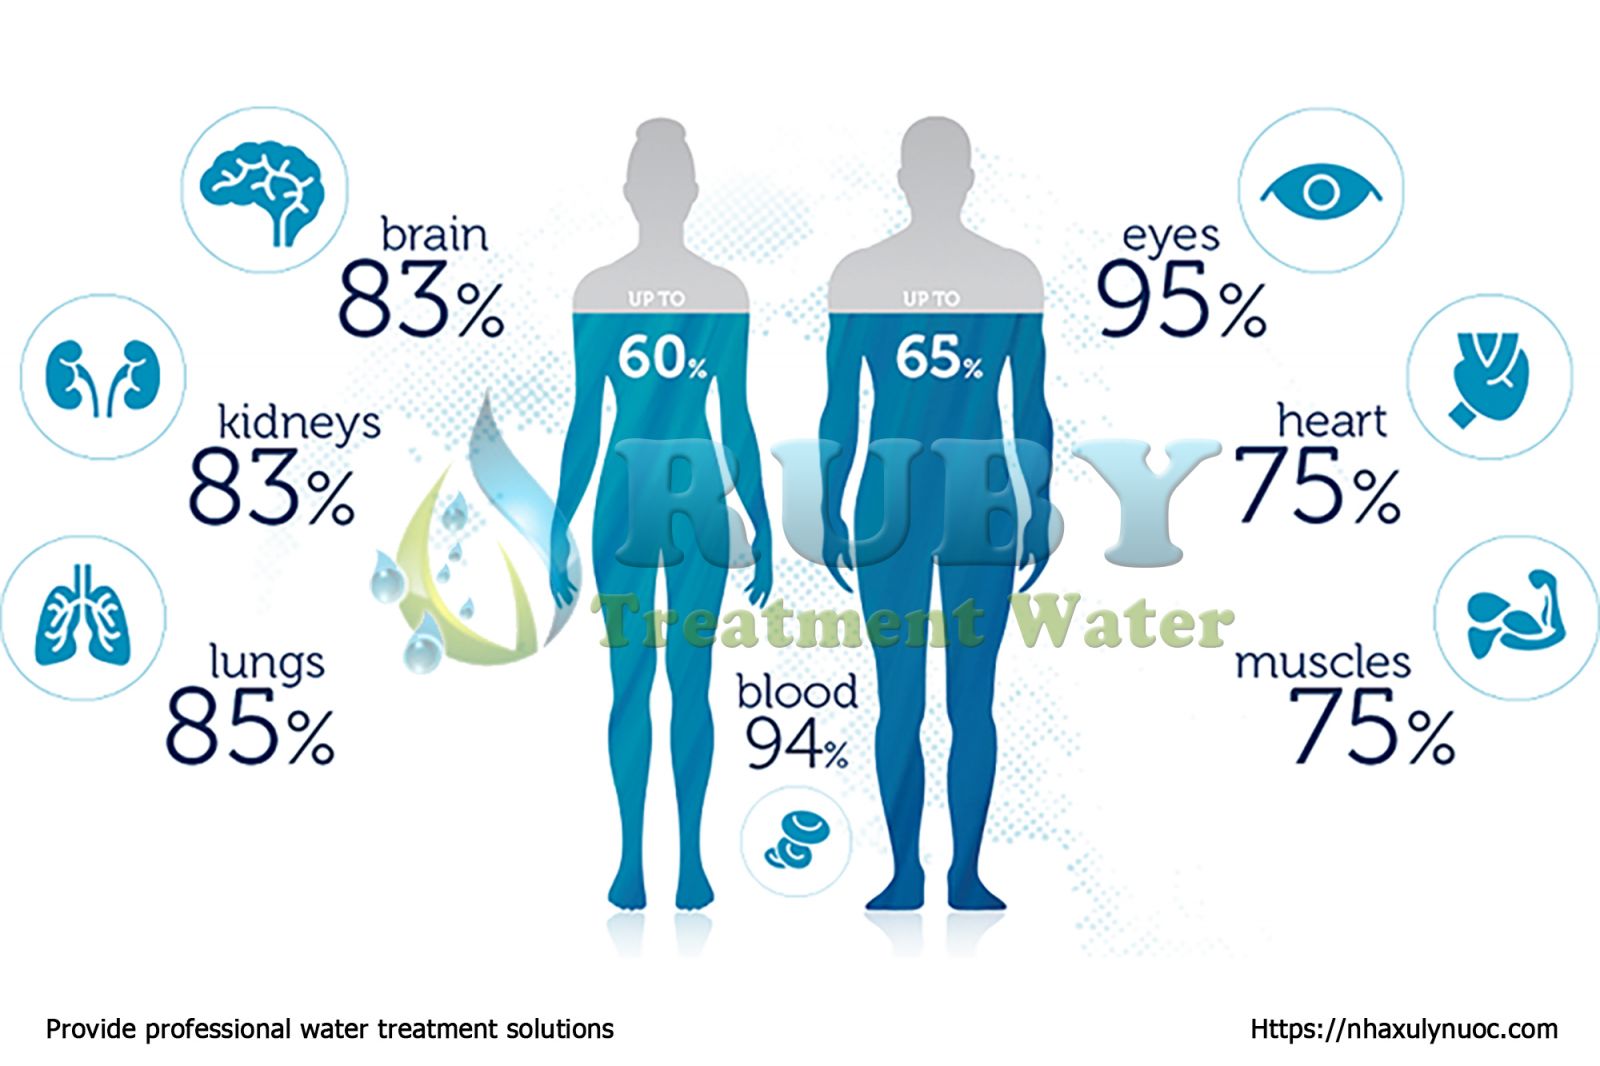 Vai trò của nước đối với cơ thể là cấu thành não bộ